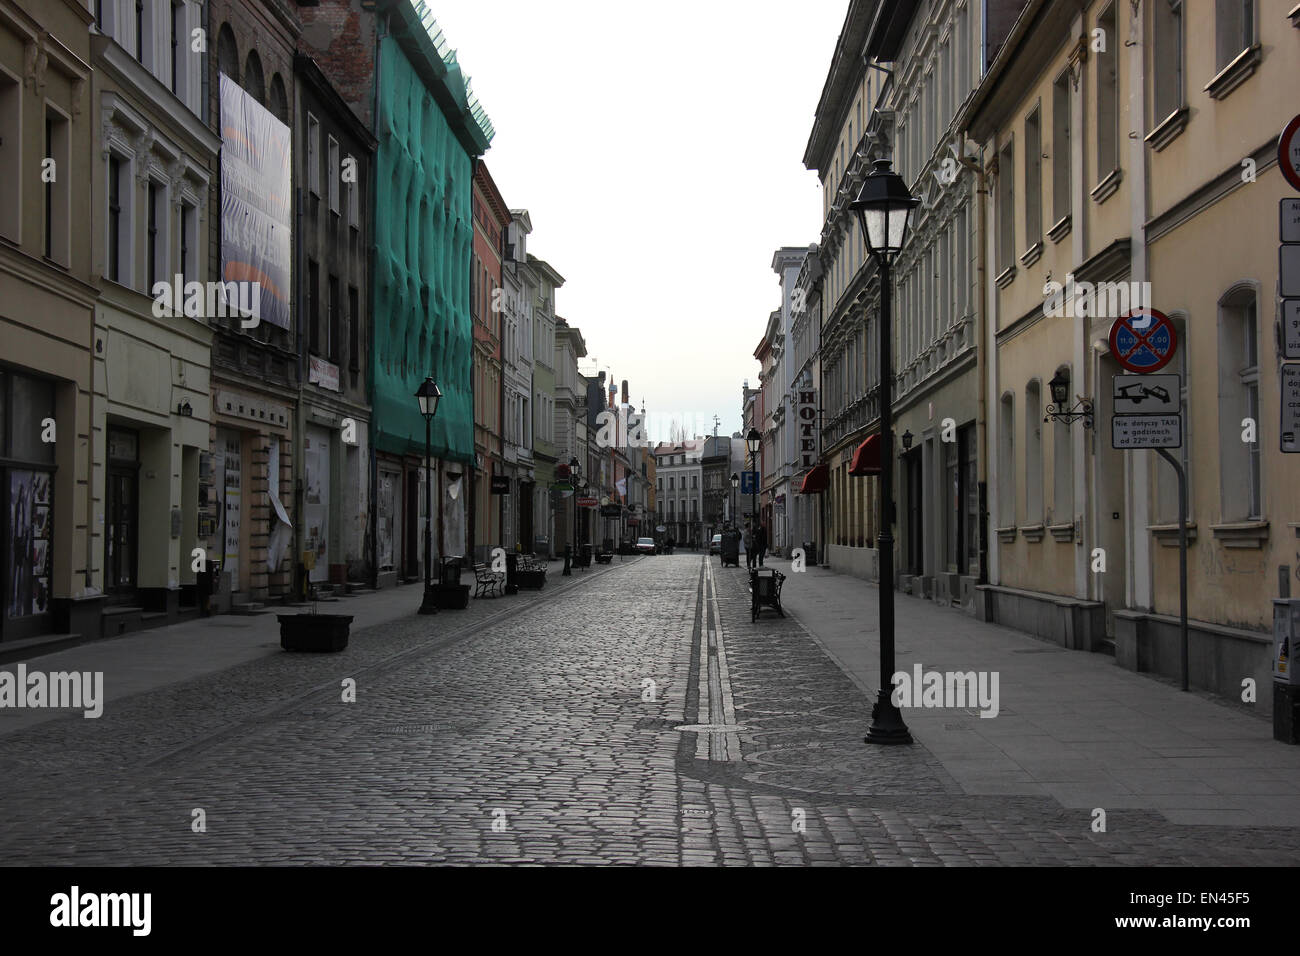 Street in Bydgoszcz, Poland Stock Photo